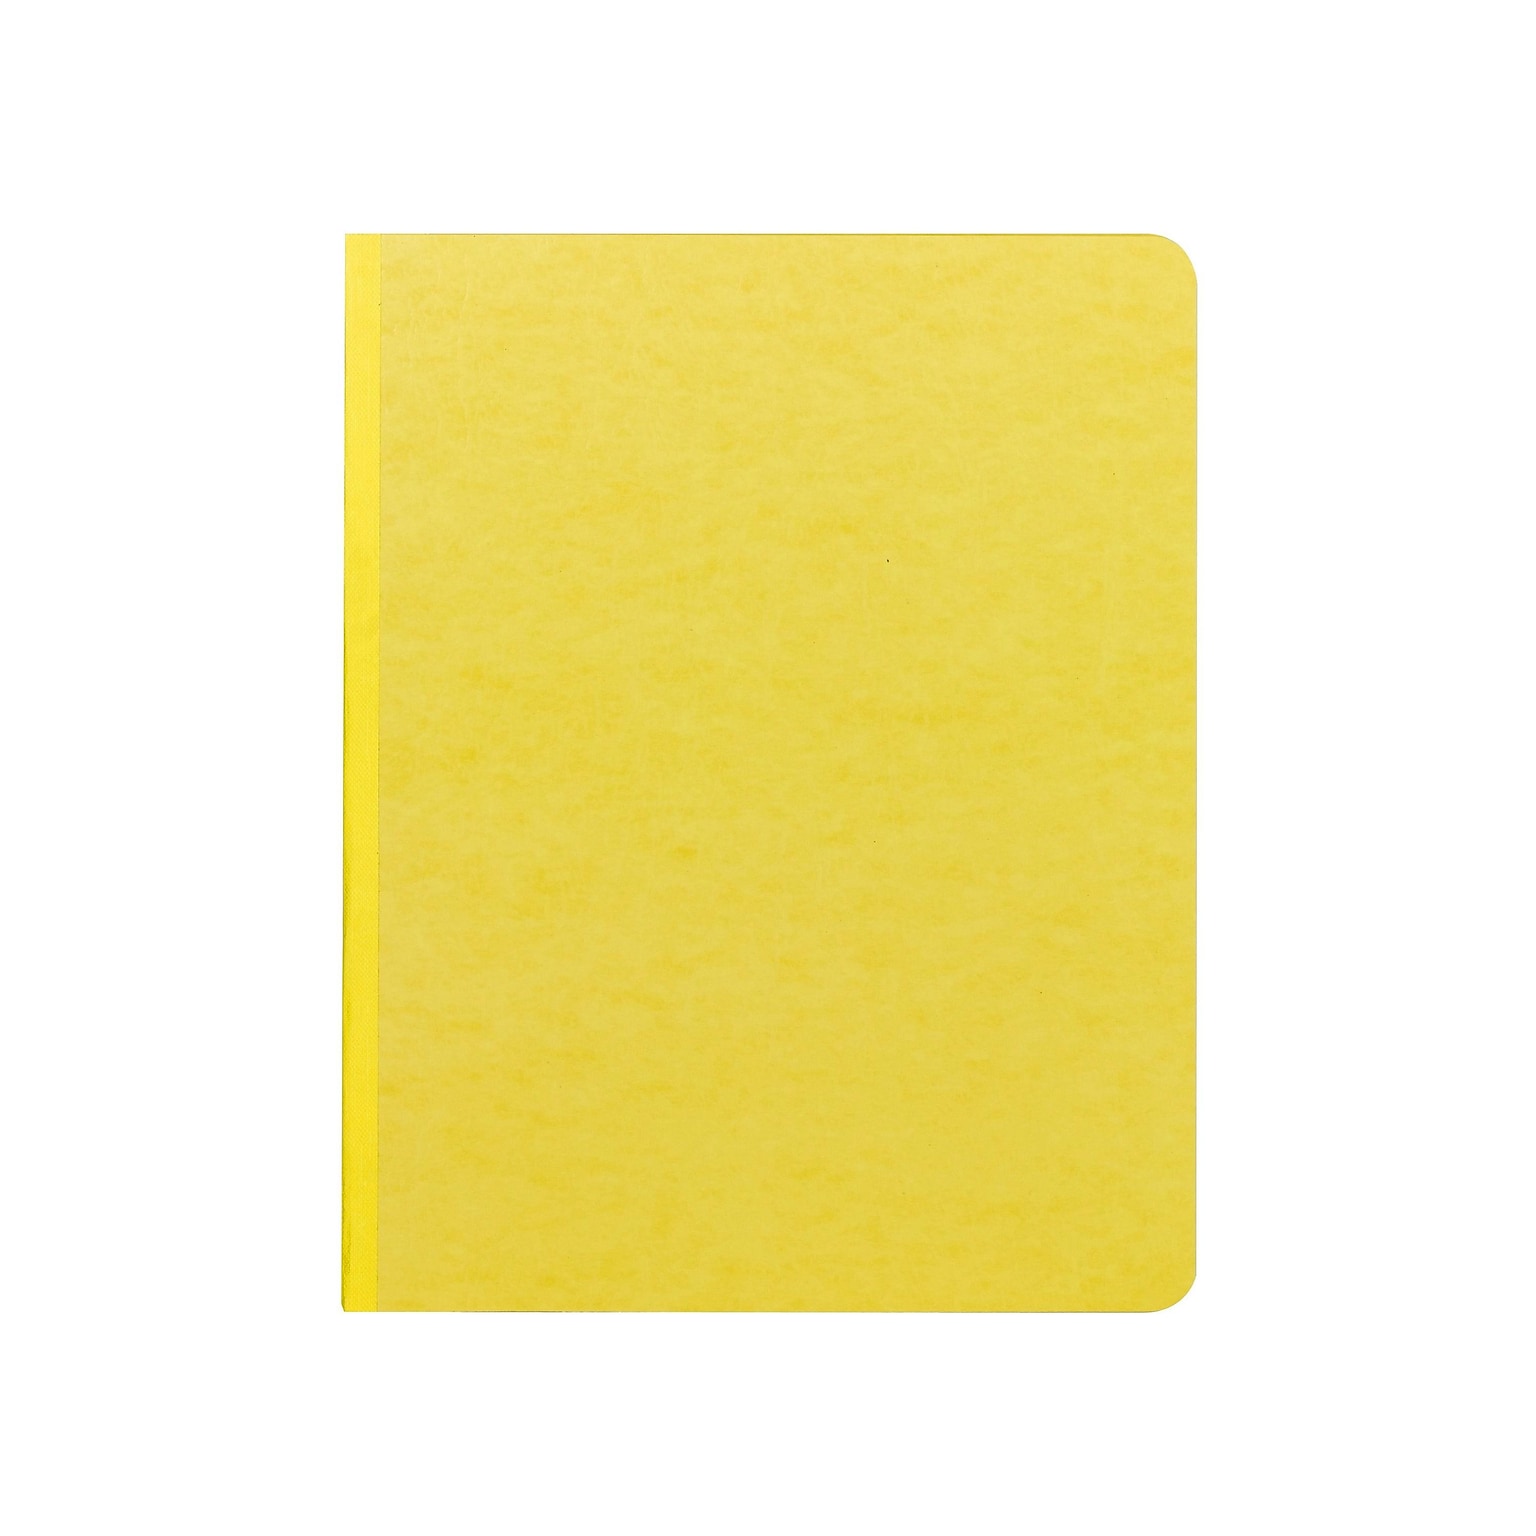 Smead Premium Pressboard Report Cover, Letter Size, Yellow (81852)